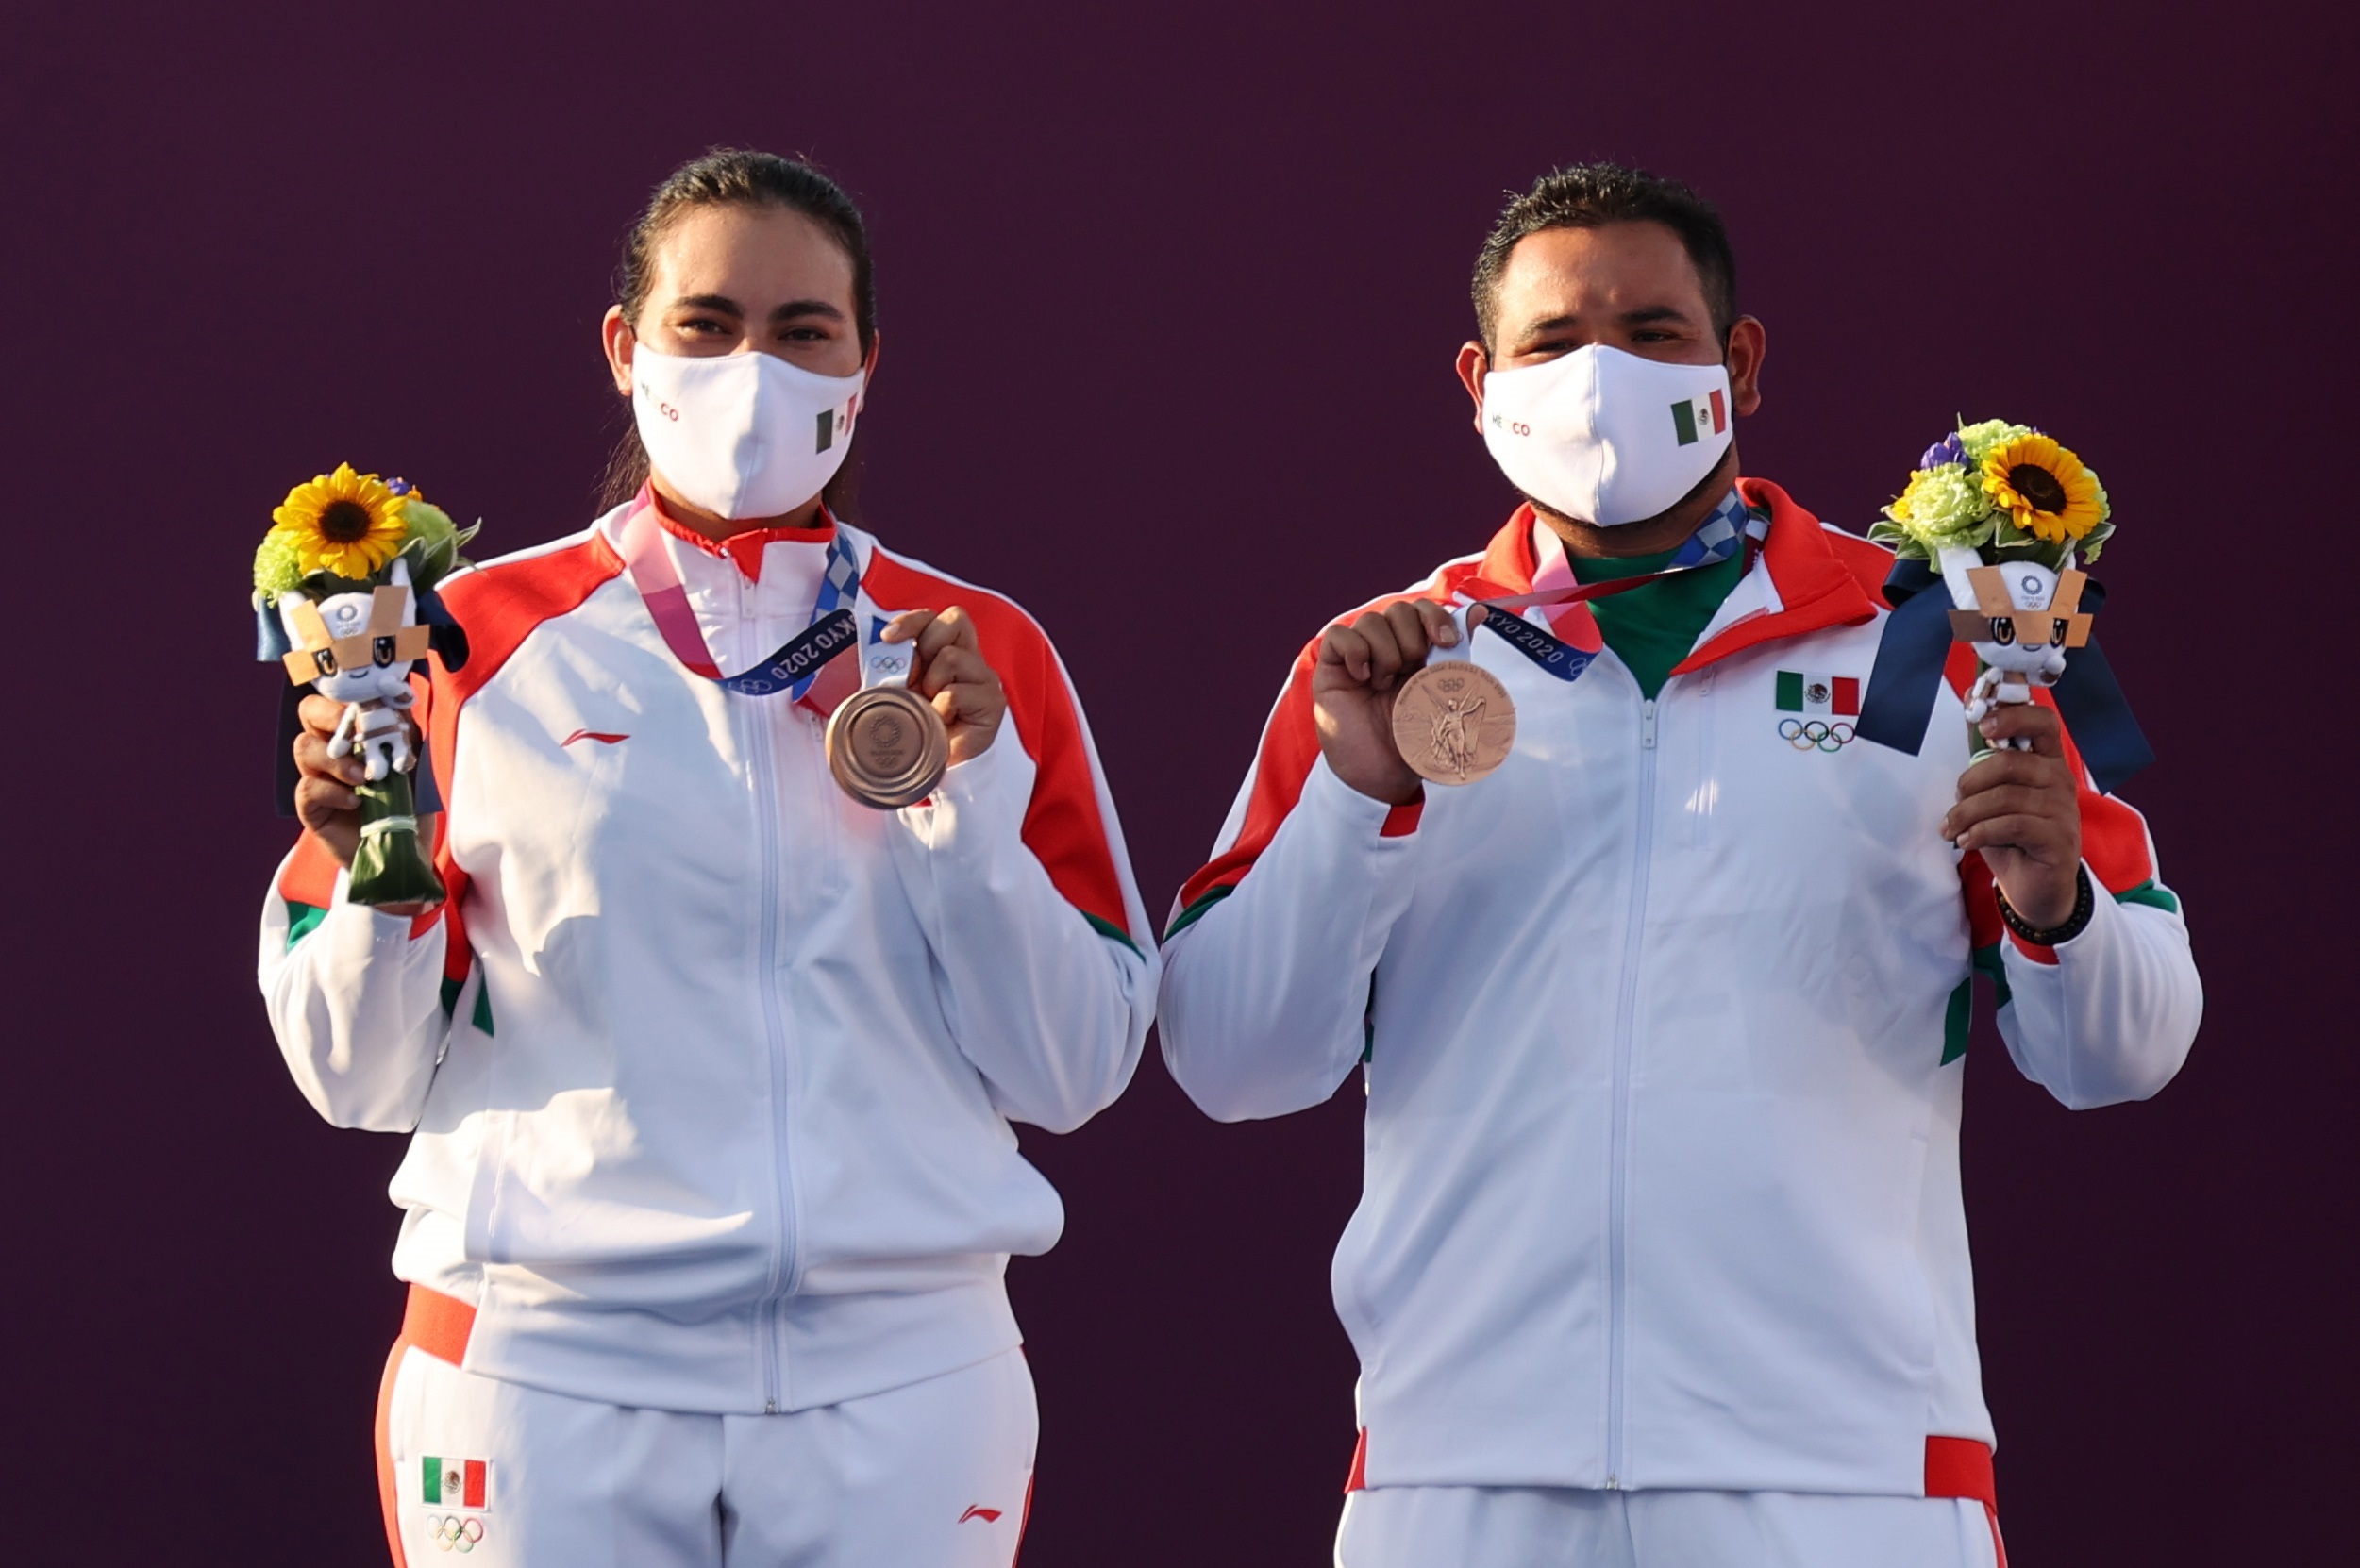 bronce olímpico en tiro con arco, México logra medalla 70 de su historia